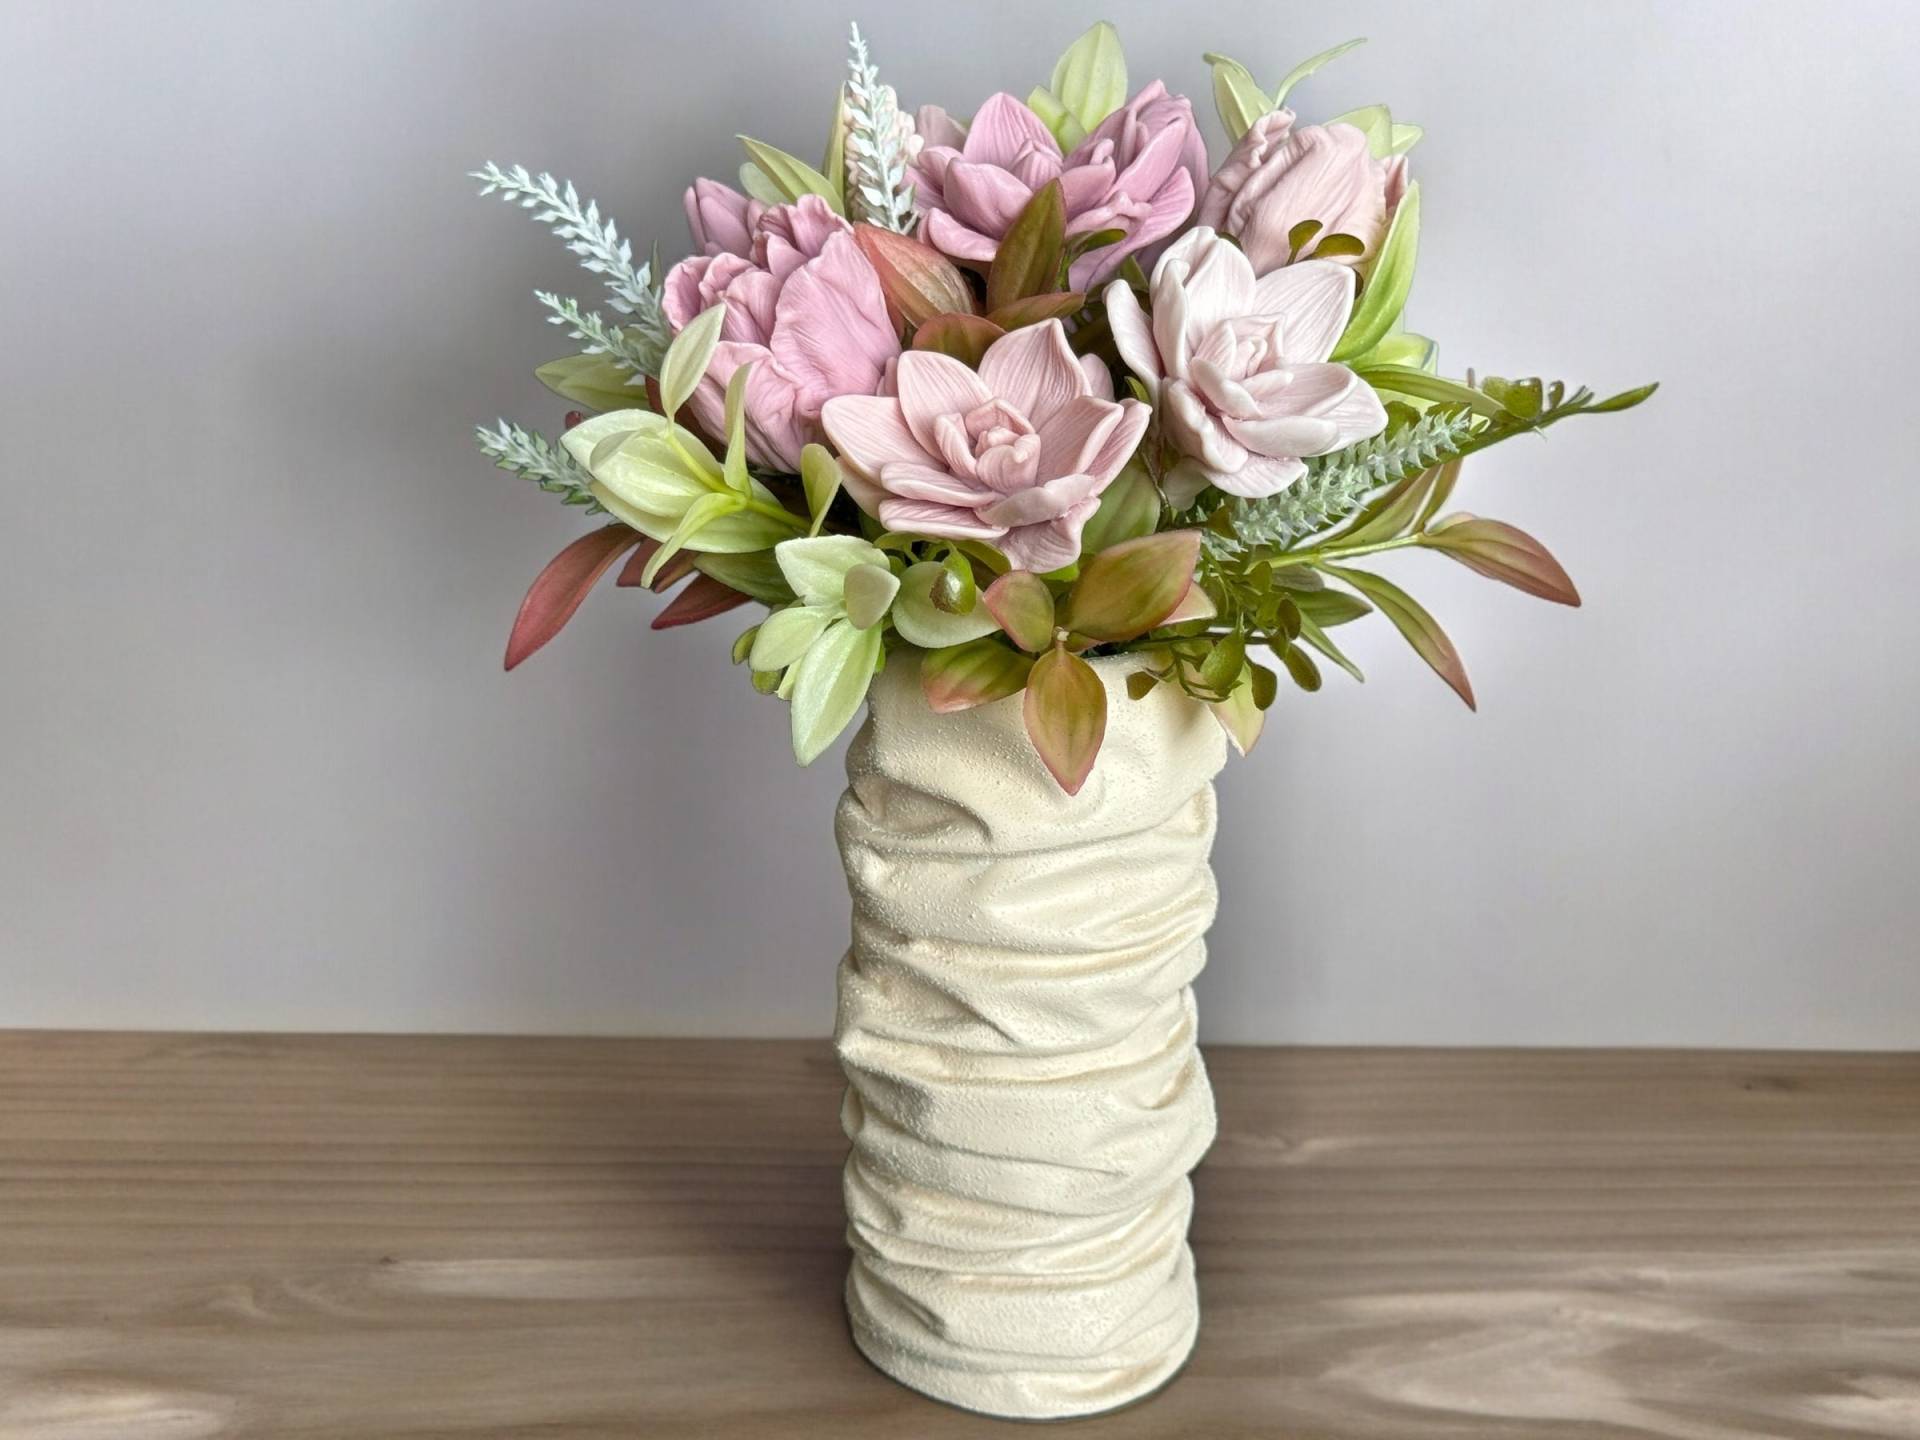 Blumenseife, Geschenk Für Mama - Tulpenstrauß Seife, Geburtstagsgeschenk Ihre Mutter, Handgemachte Dekorative Blumenseife von FlowersDStore